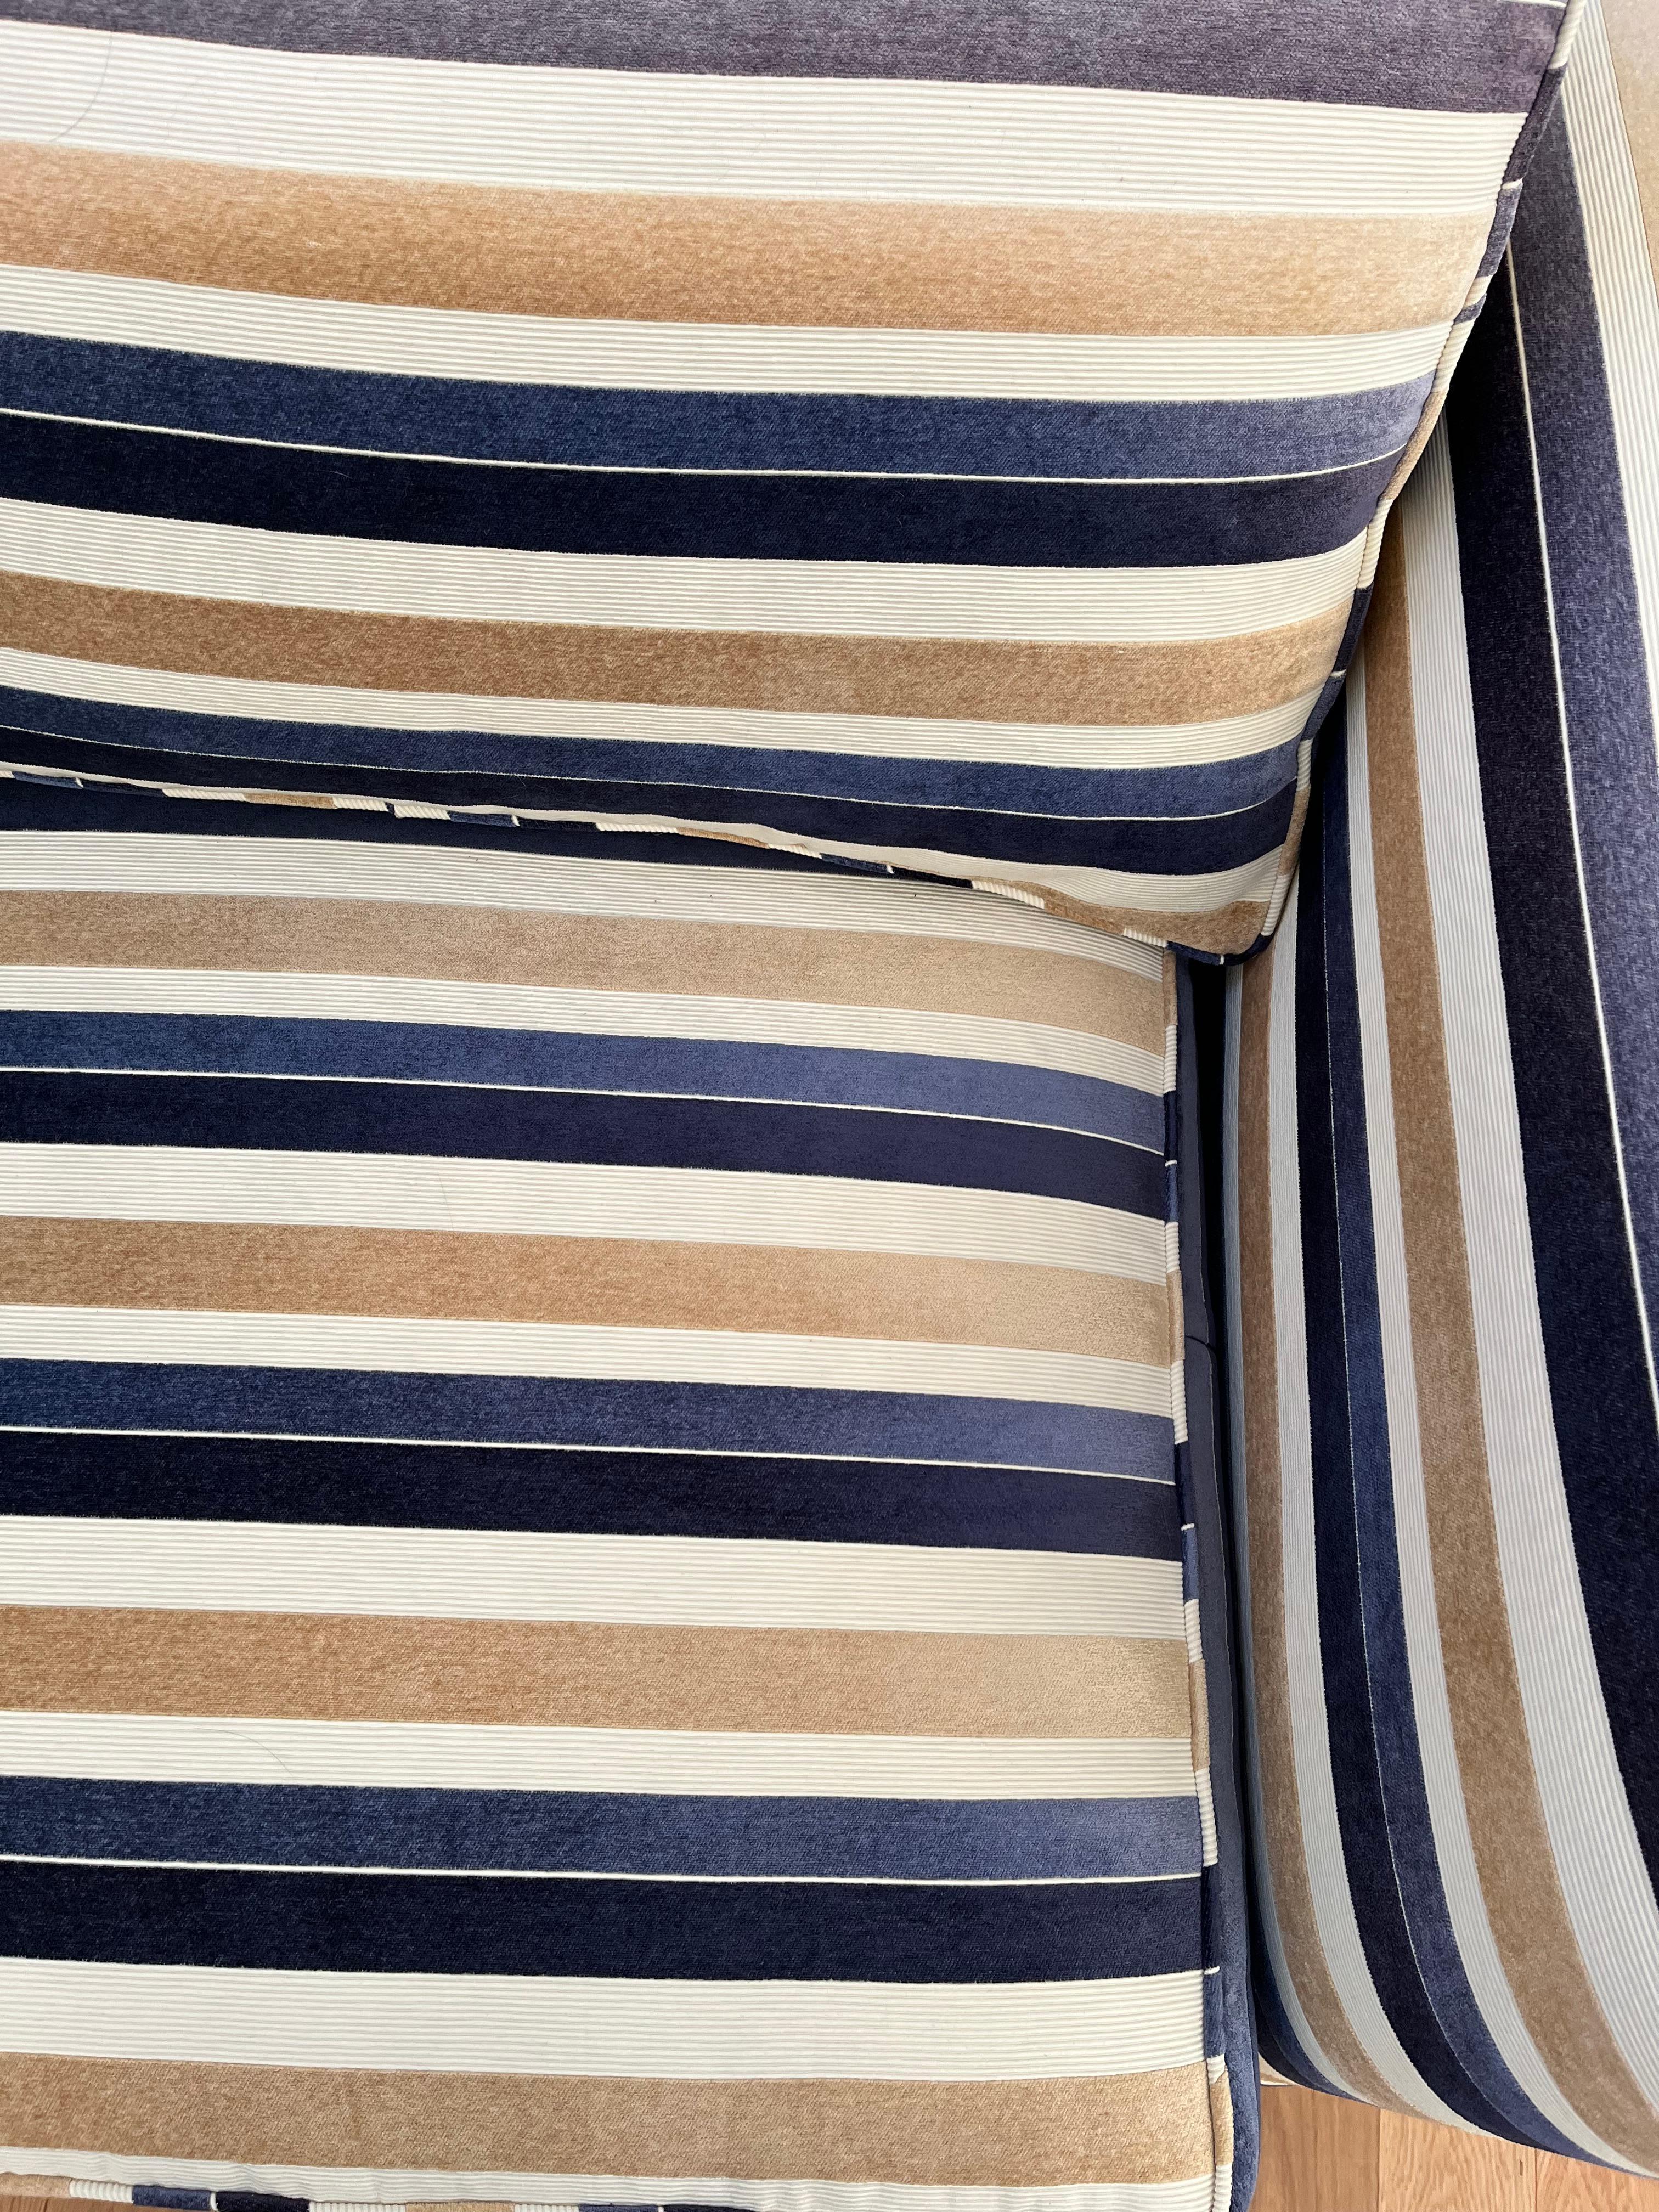 Un très beau canapé à rayures audacieuses en tissu velours or, bleu et crème.